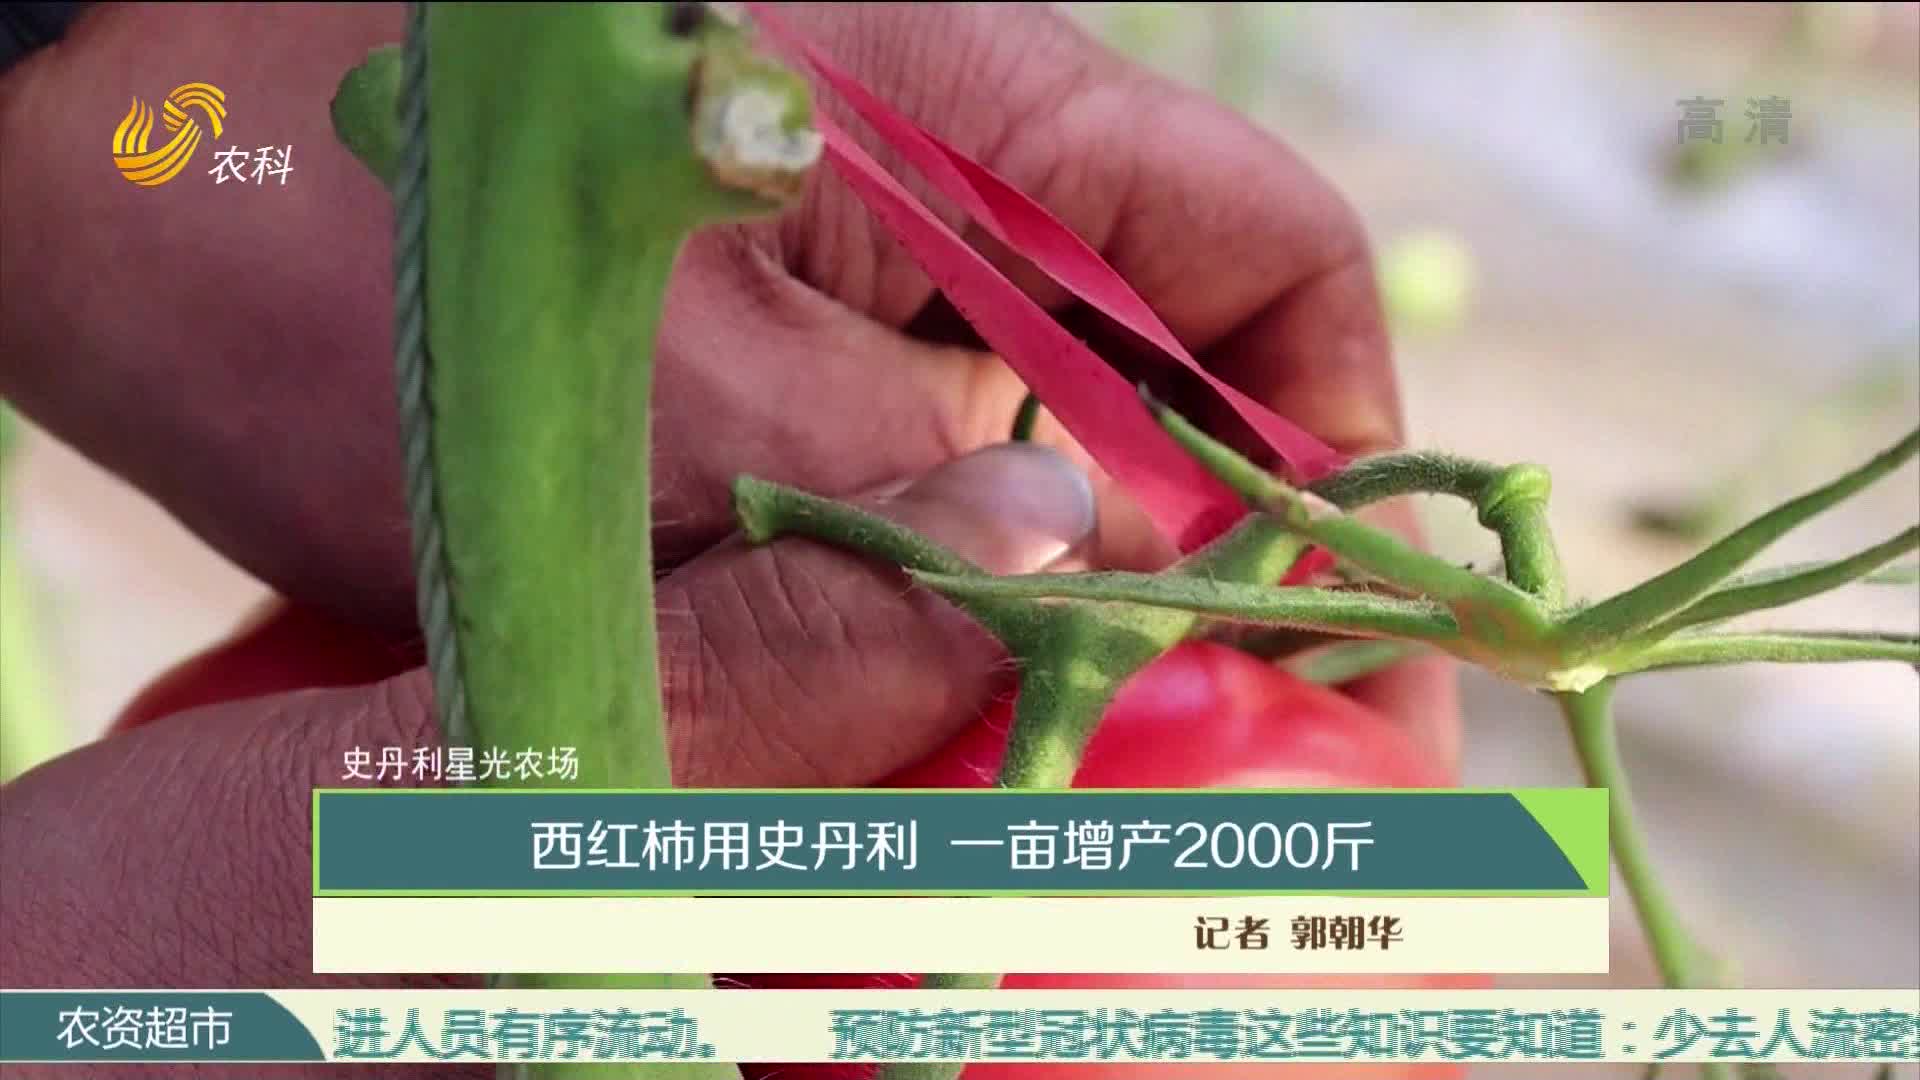 【史丹利·星光农场】西红柿用史丹利 一亩增产2000斤